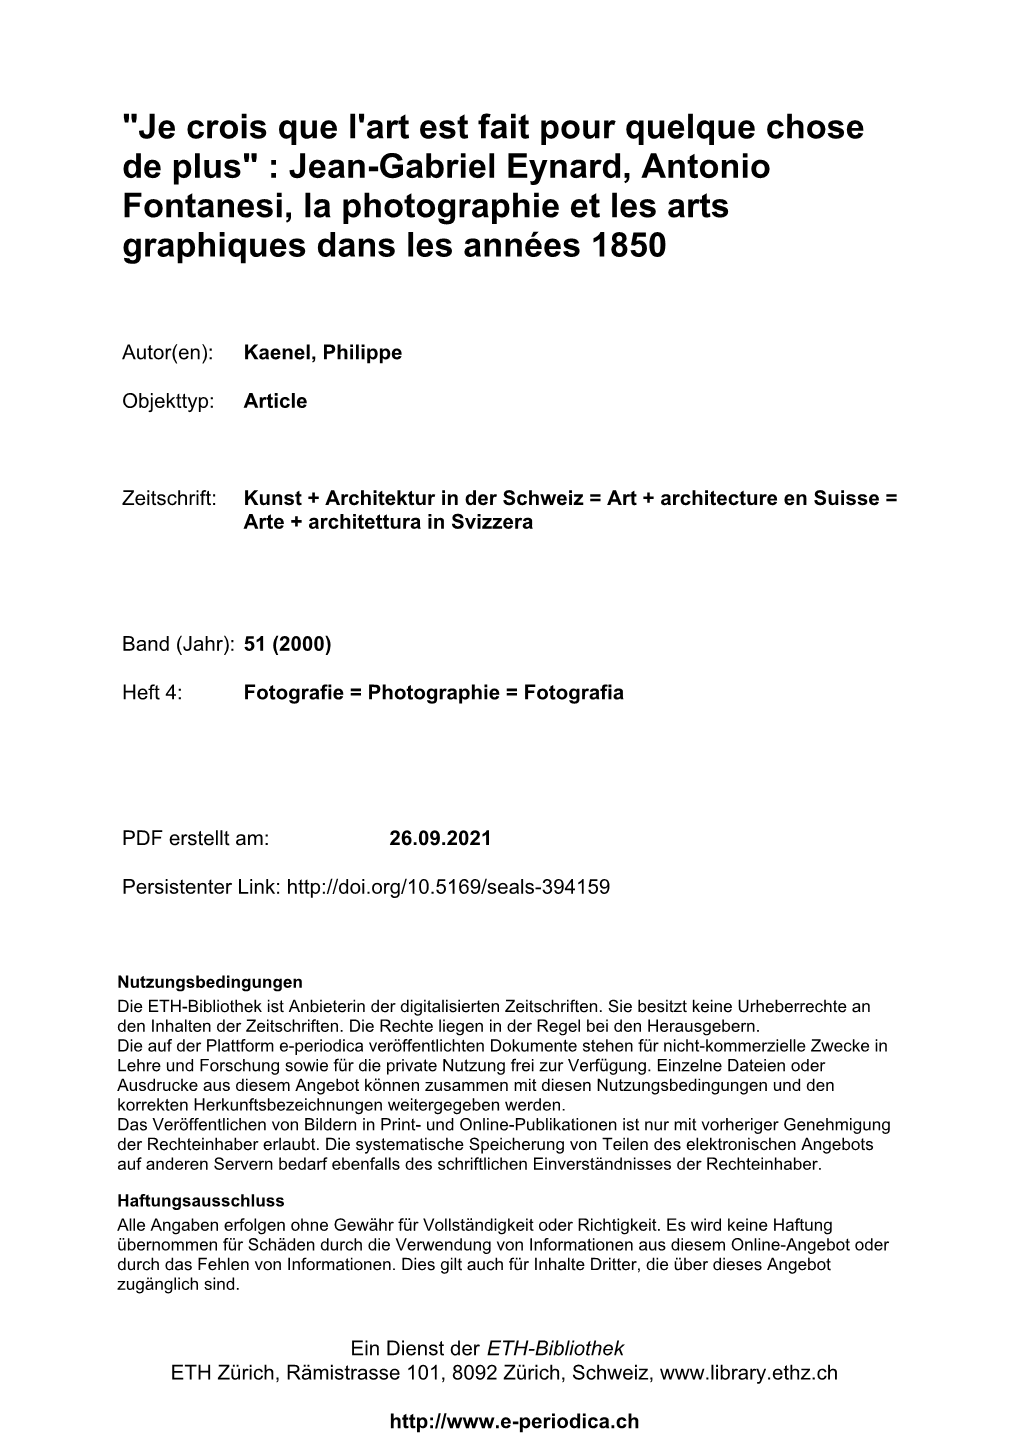 Jean-Gabriel Eynard, Antonio Fontanesi, La Photographie Et Les Arts Graphiques Dans Les Années 1850